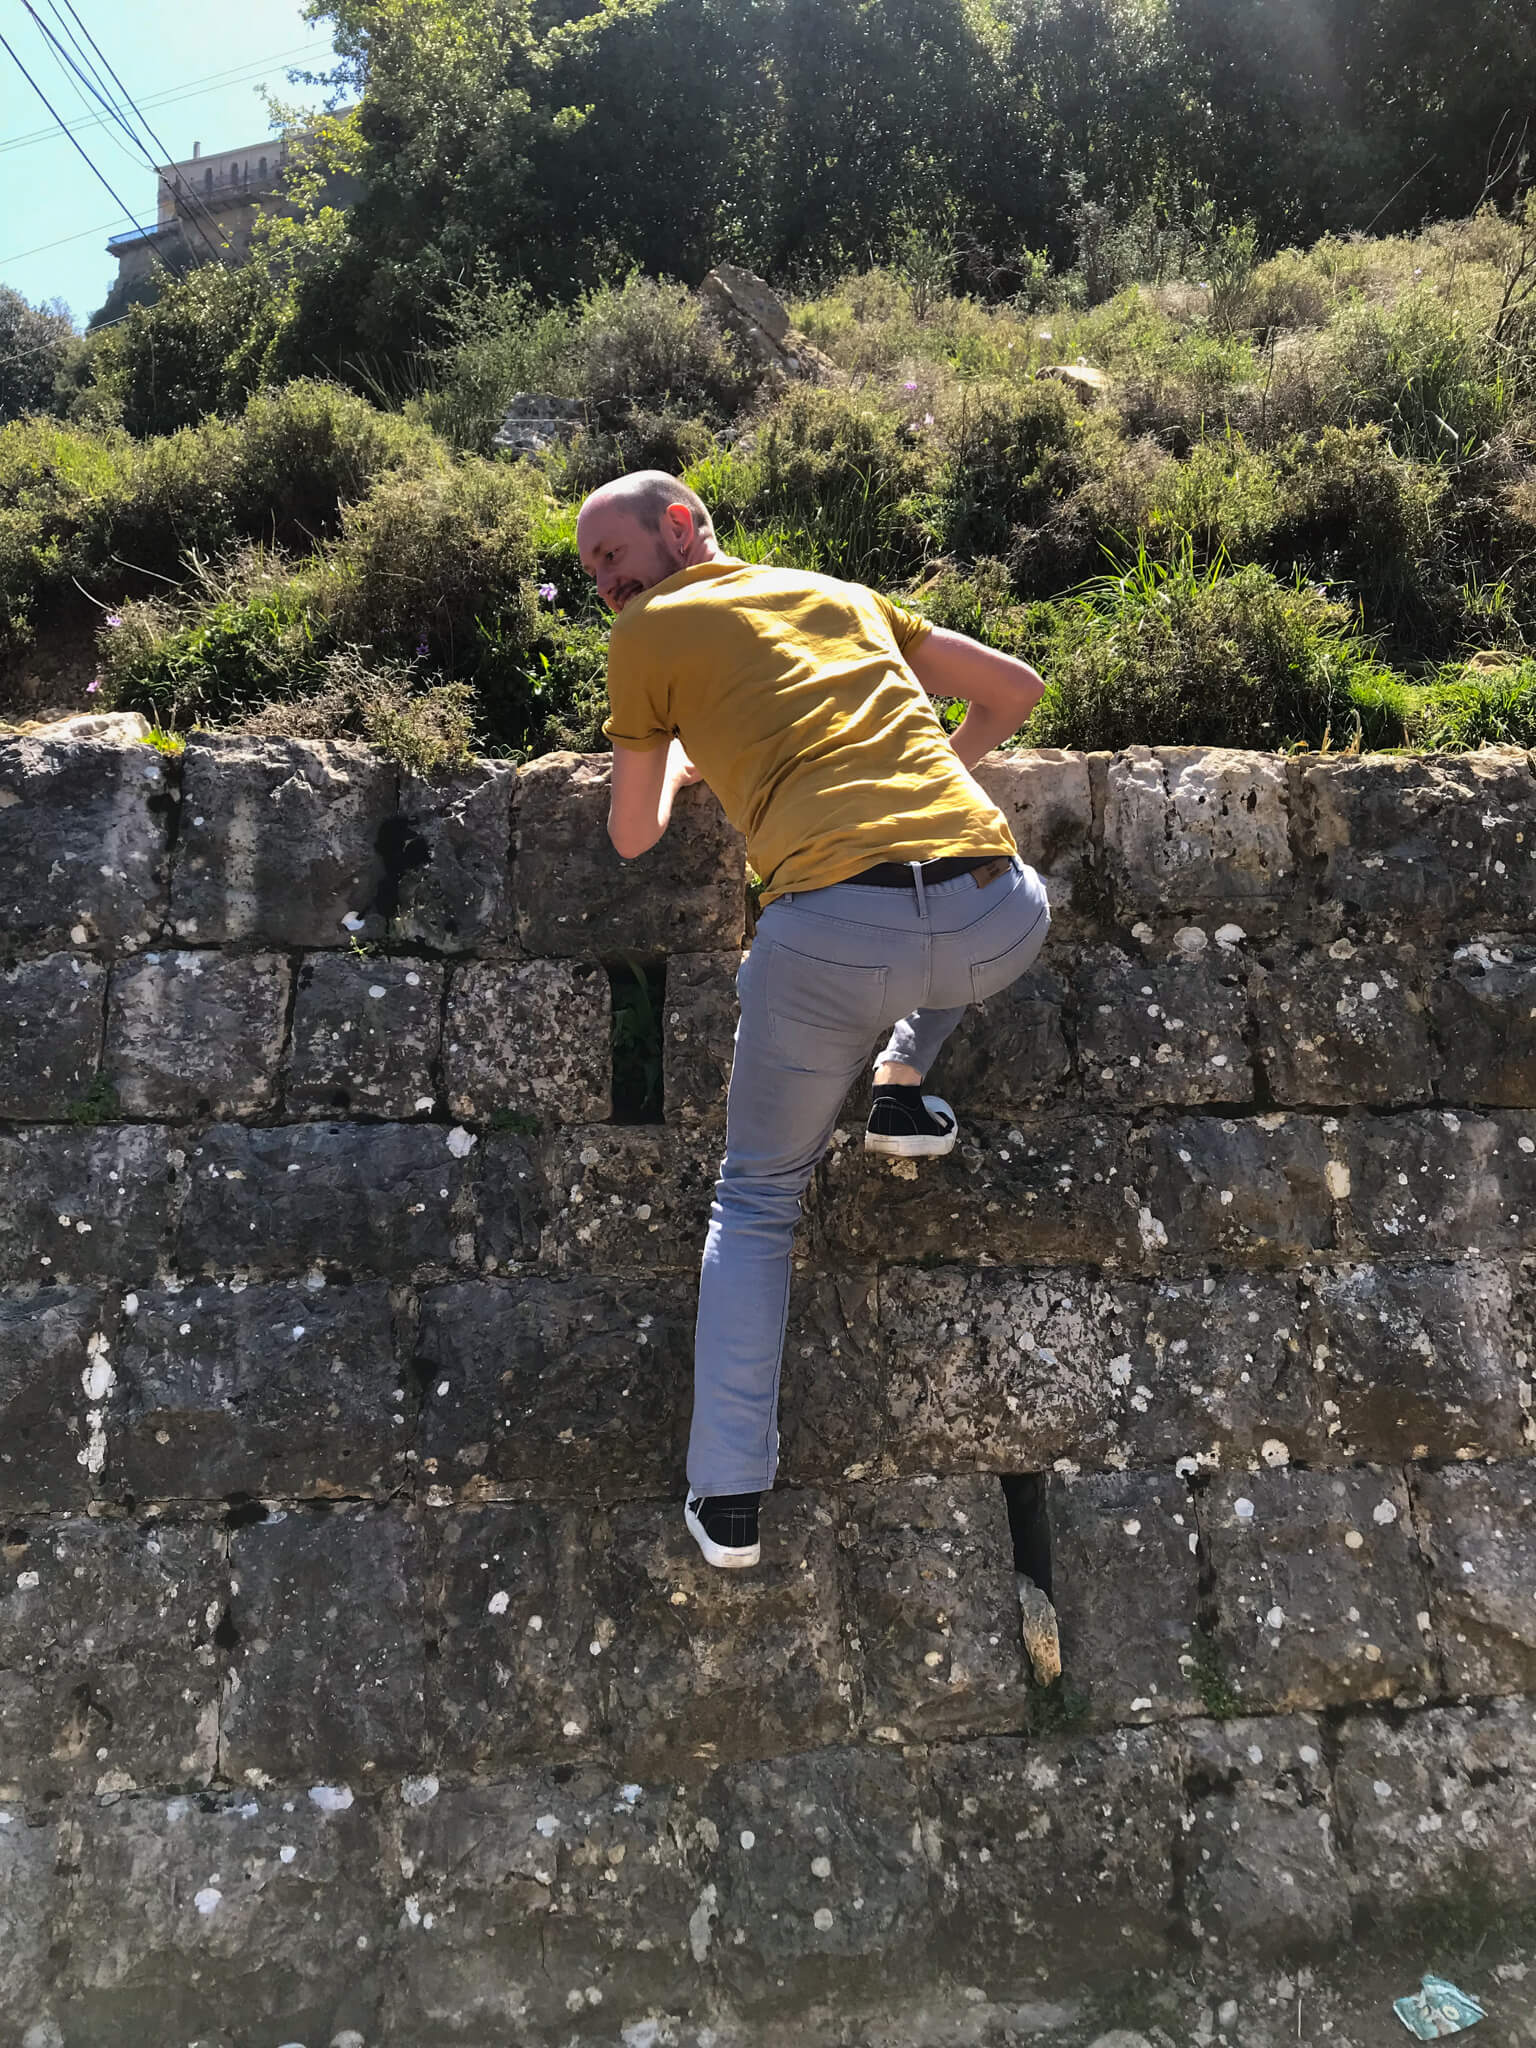 Me, climbing over a brick wall